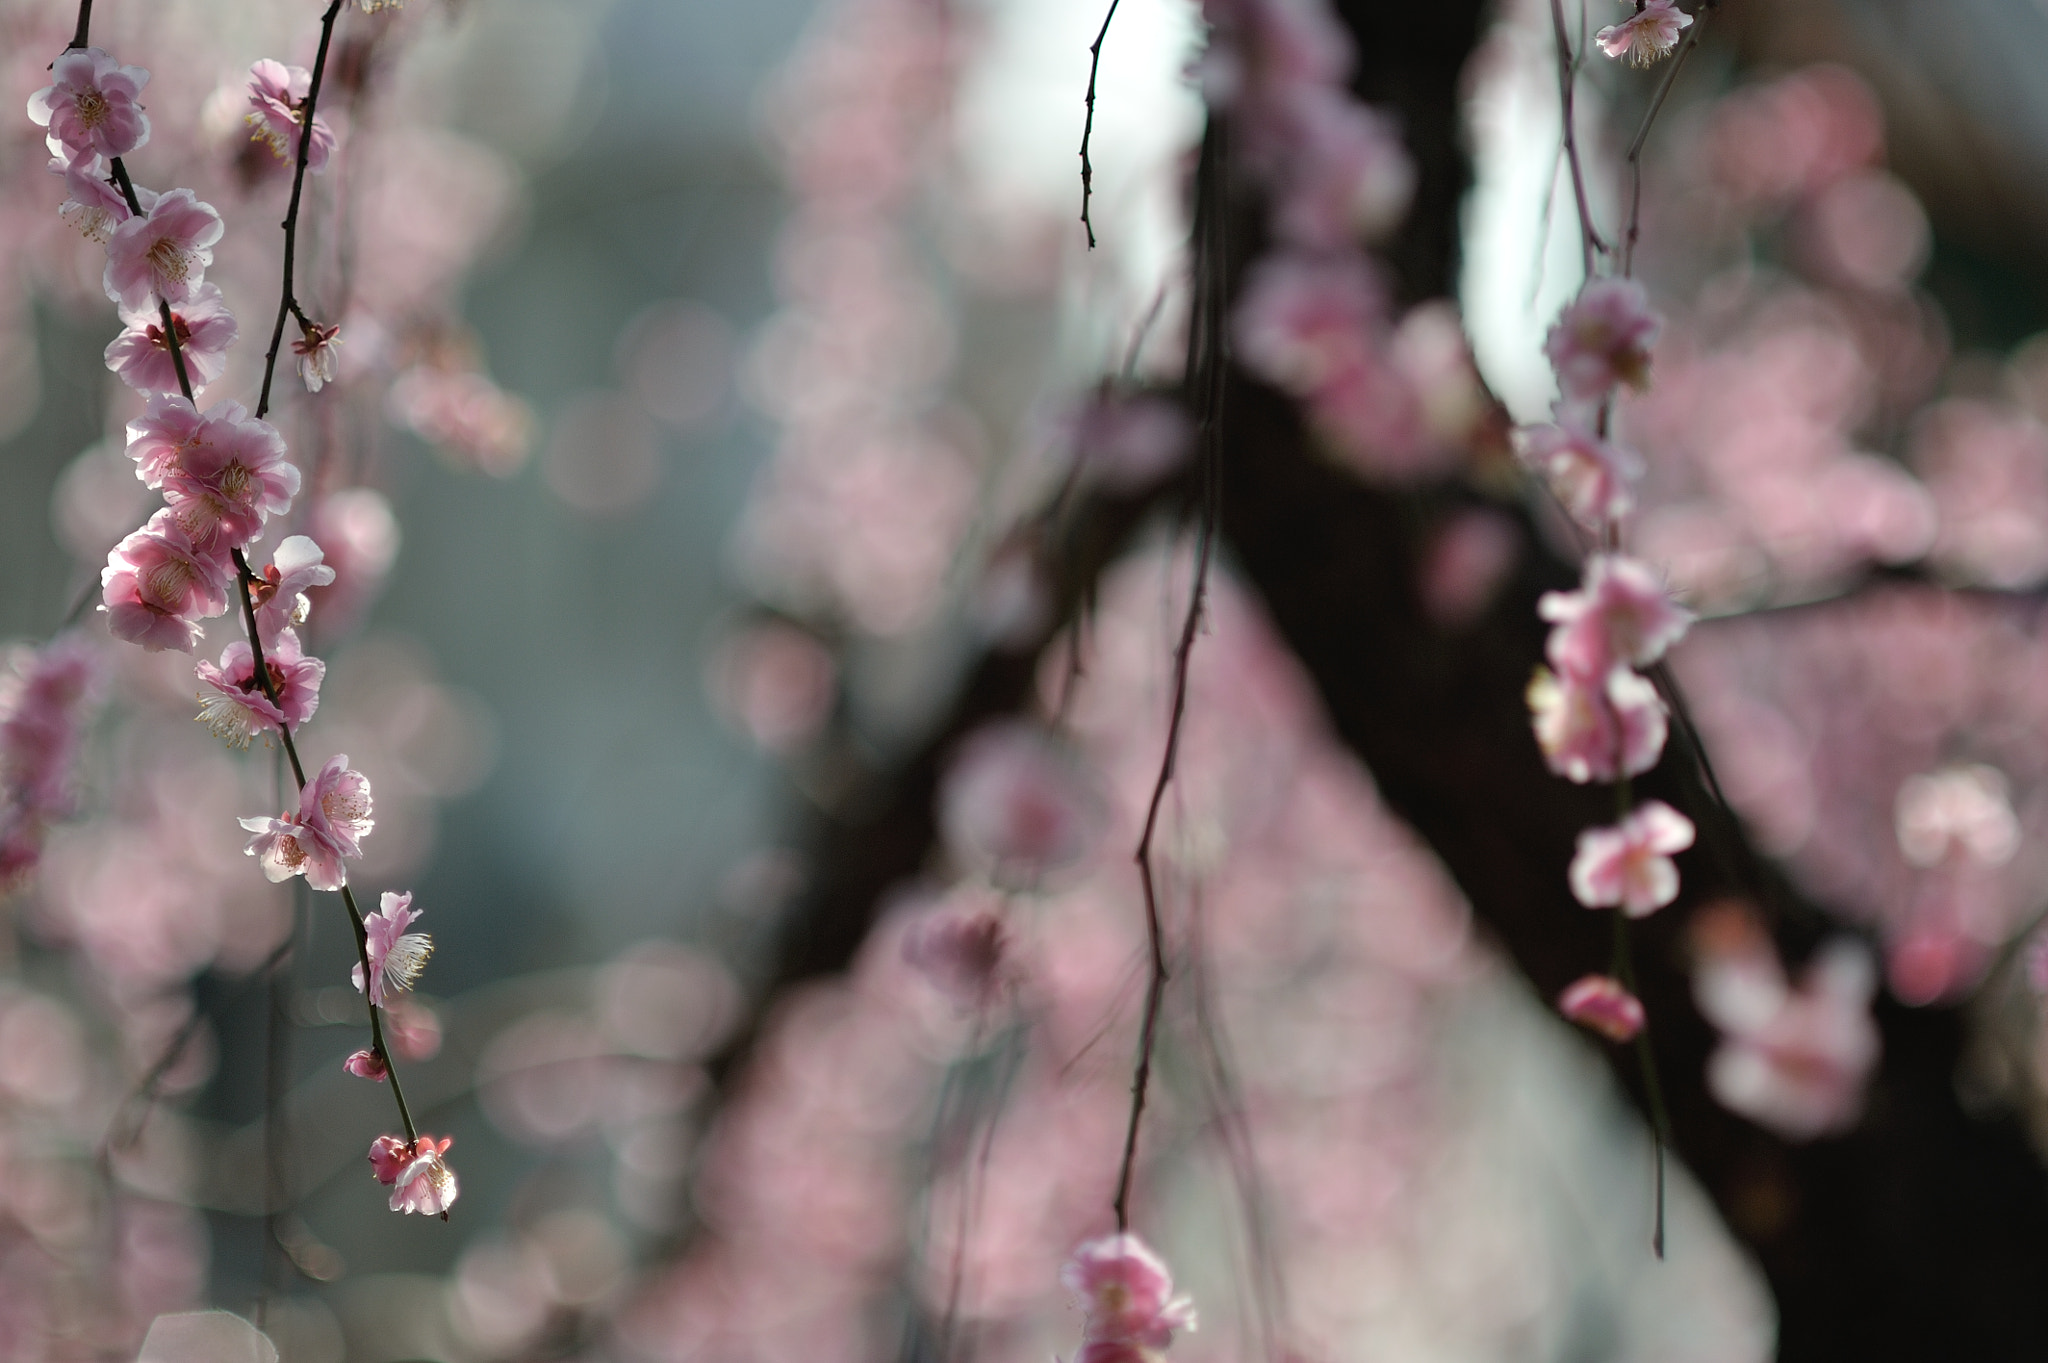 Nikon D700 + AF DC-Nikkor 135mm f/2D sample photo. Ume blossoms photography